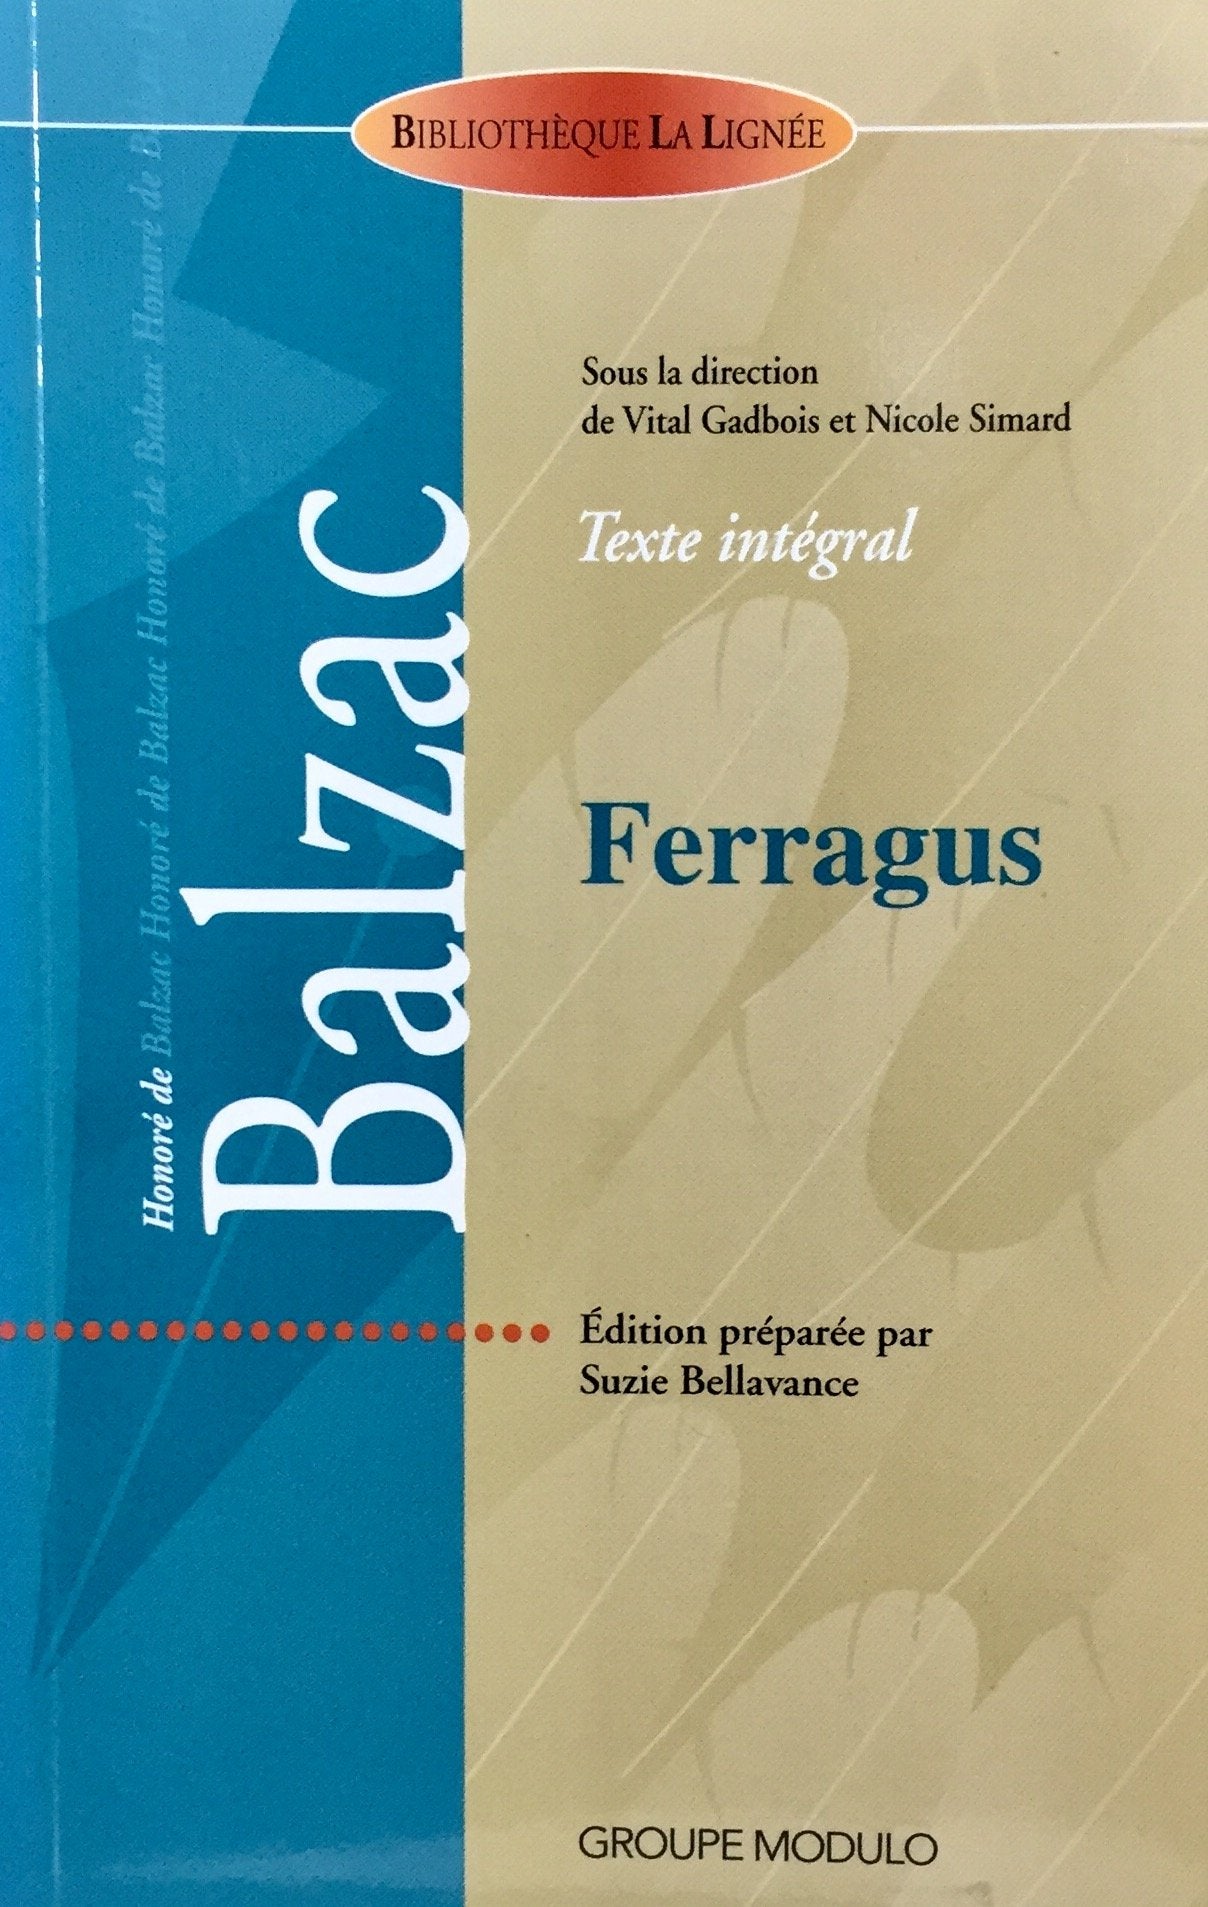 Livre ISBN 2895930740 Bibliothèque La Lignée : Ferragus (Honoré de Balzac)